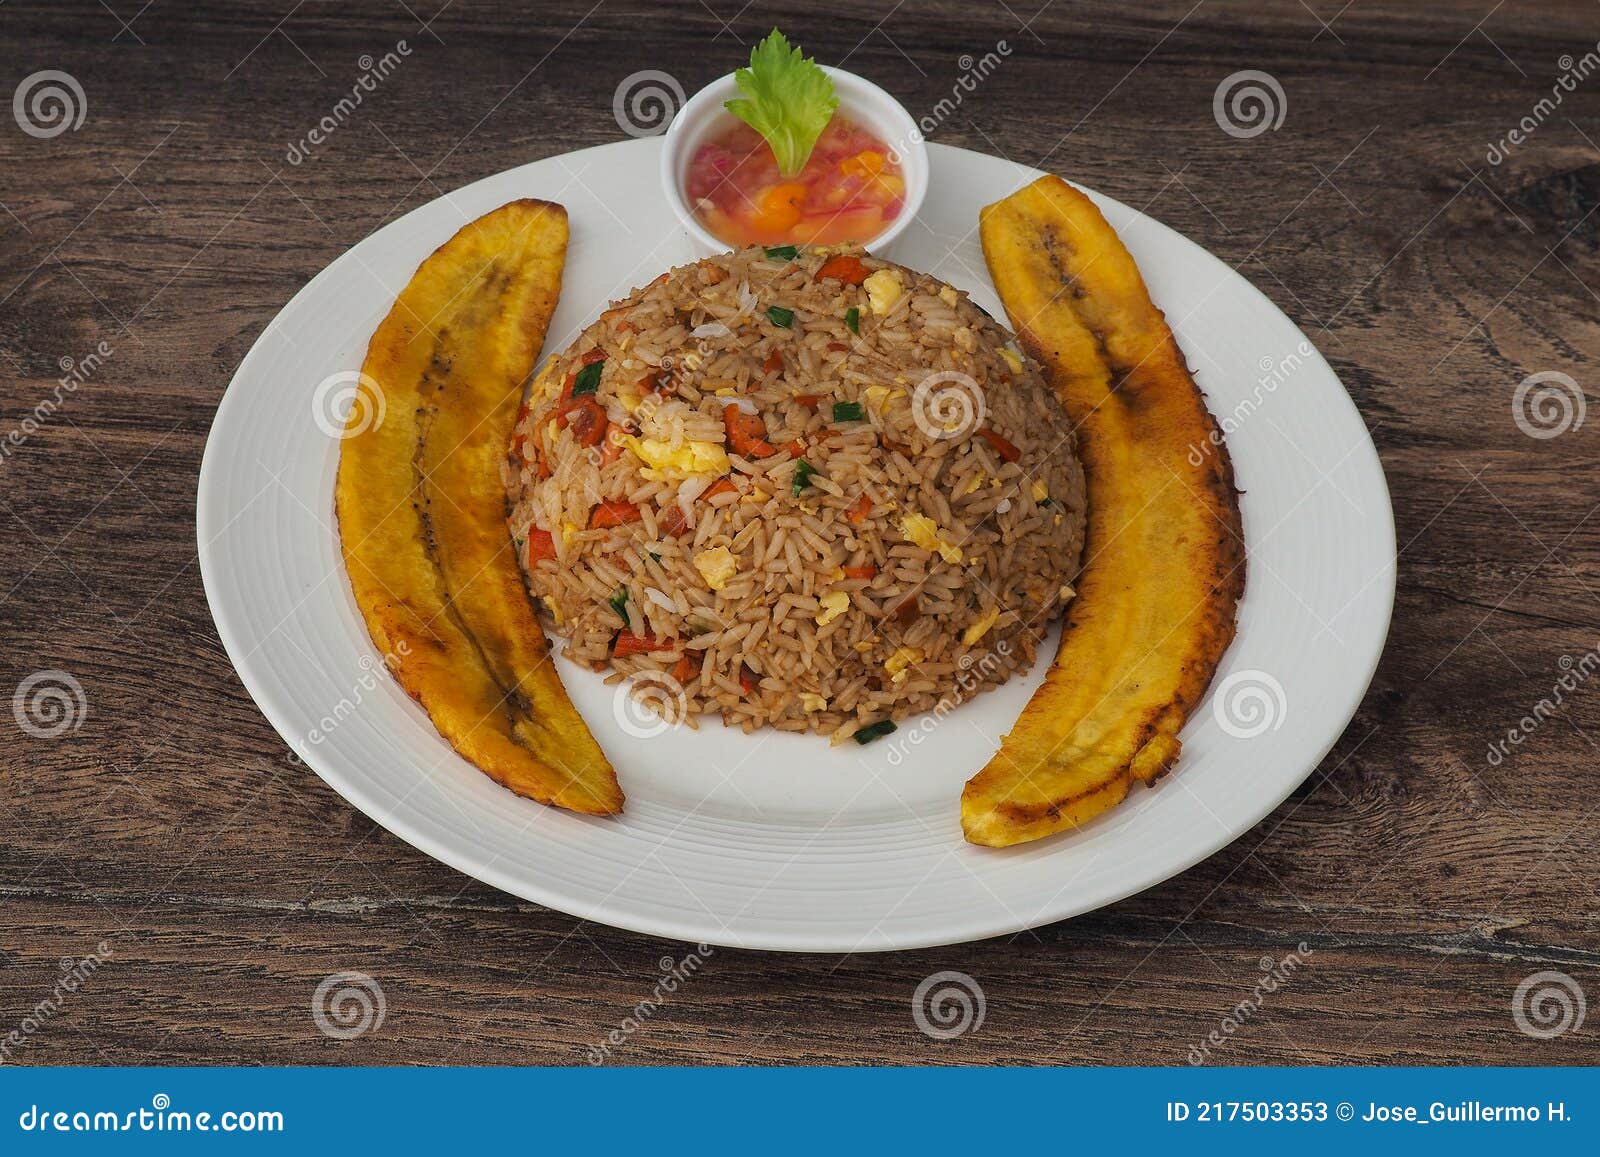 peruvian jungle gastronomy. arroz chaufa de cecina. chinesse rice with cecina.